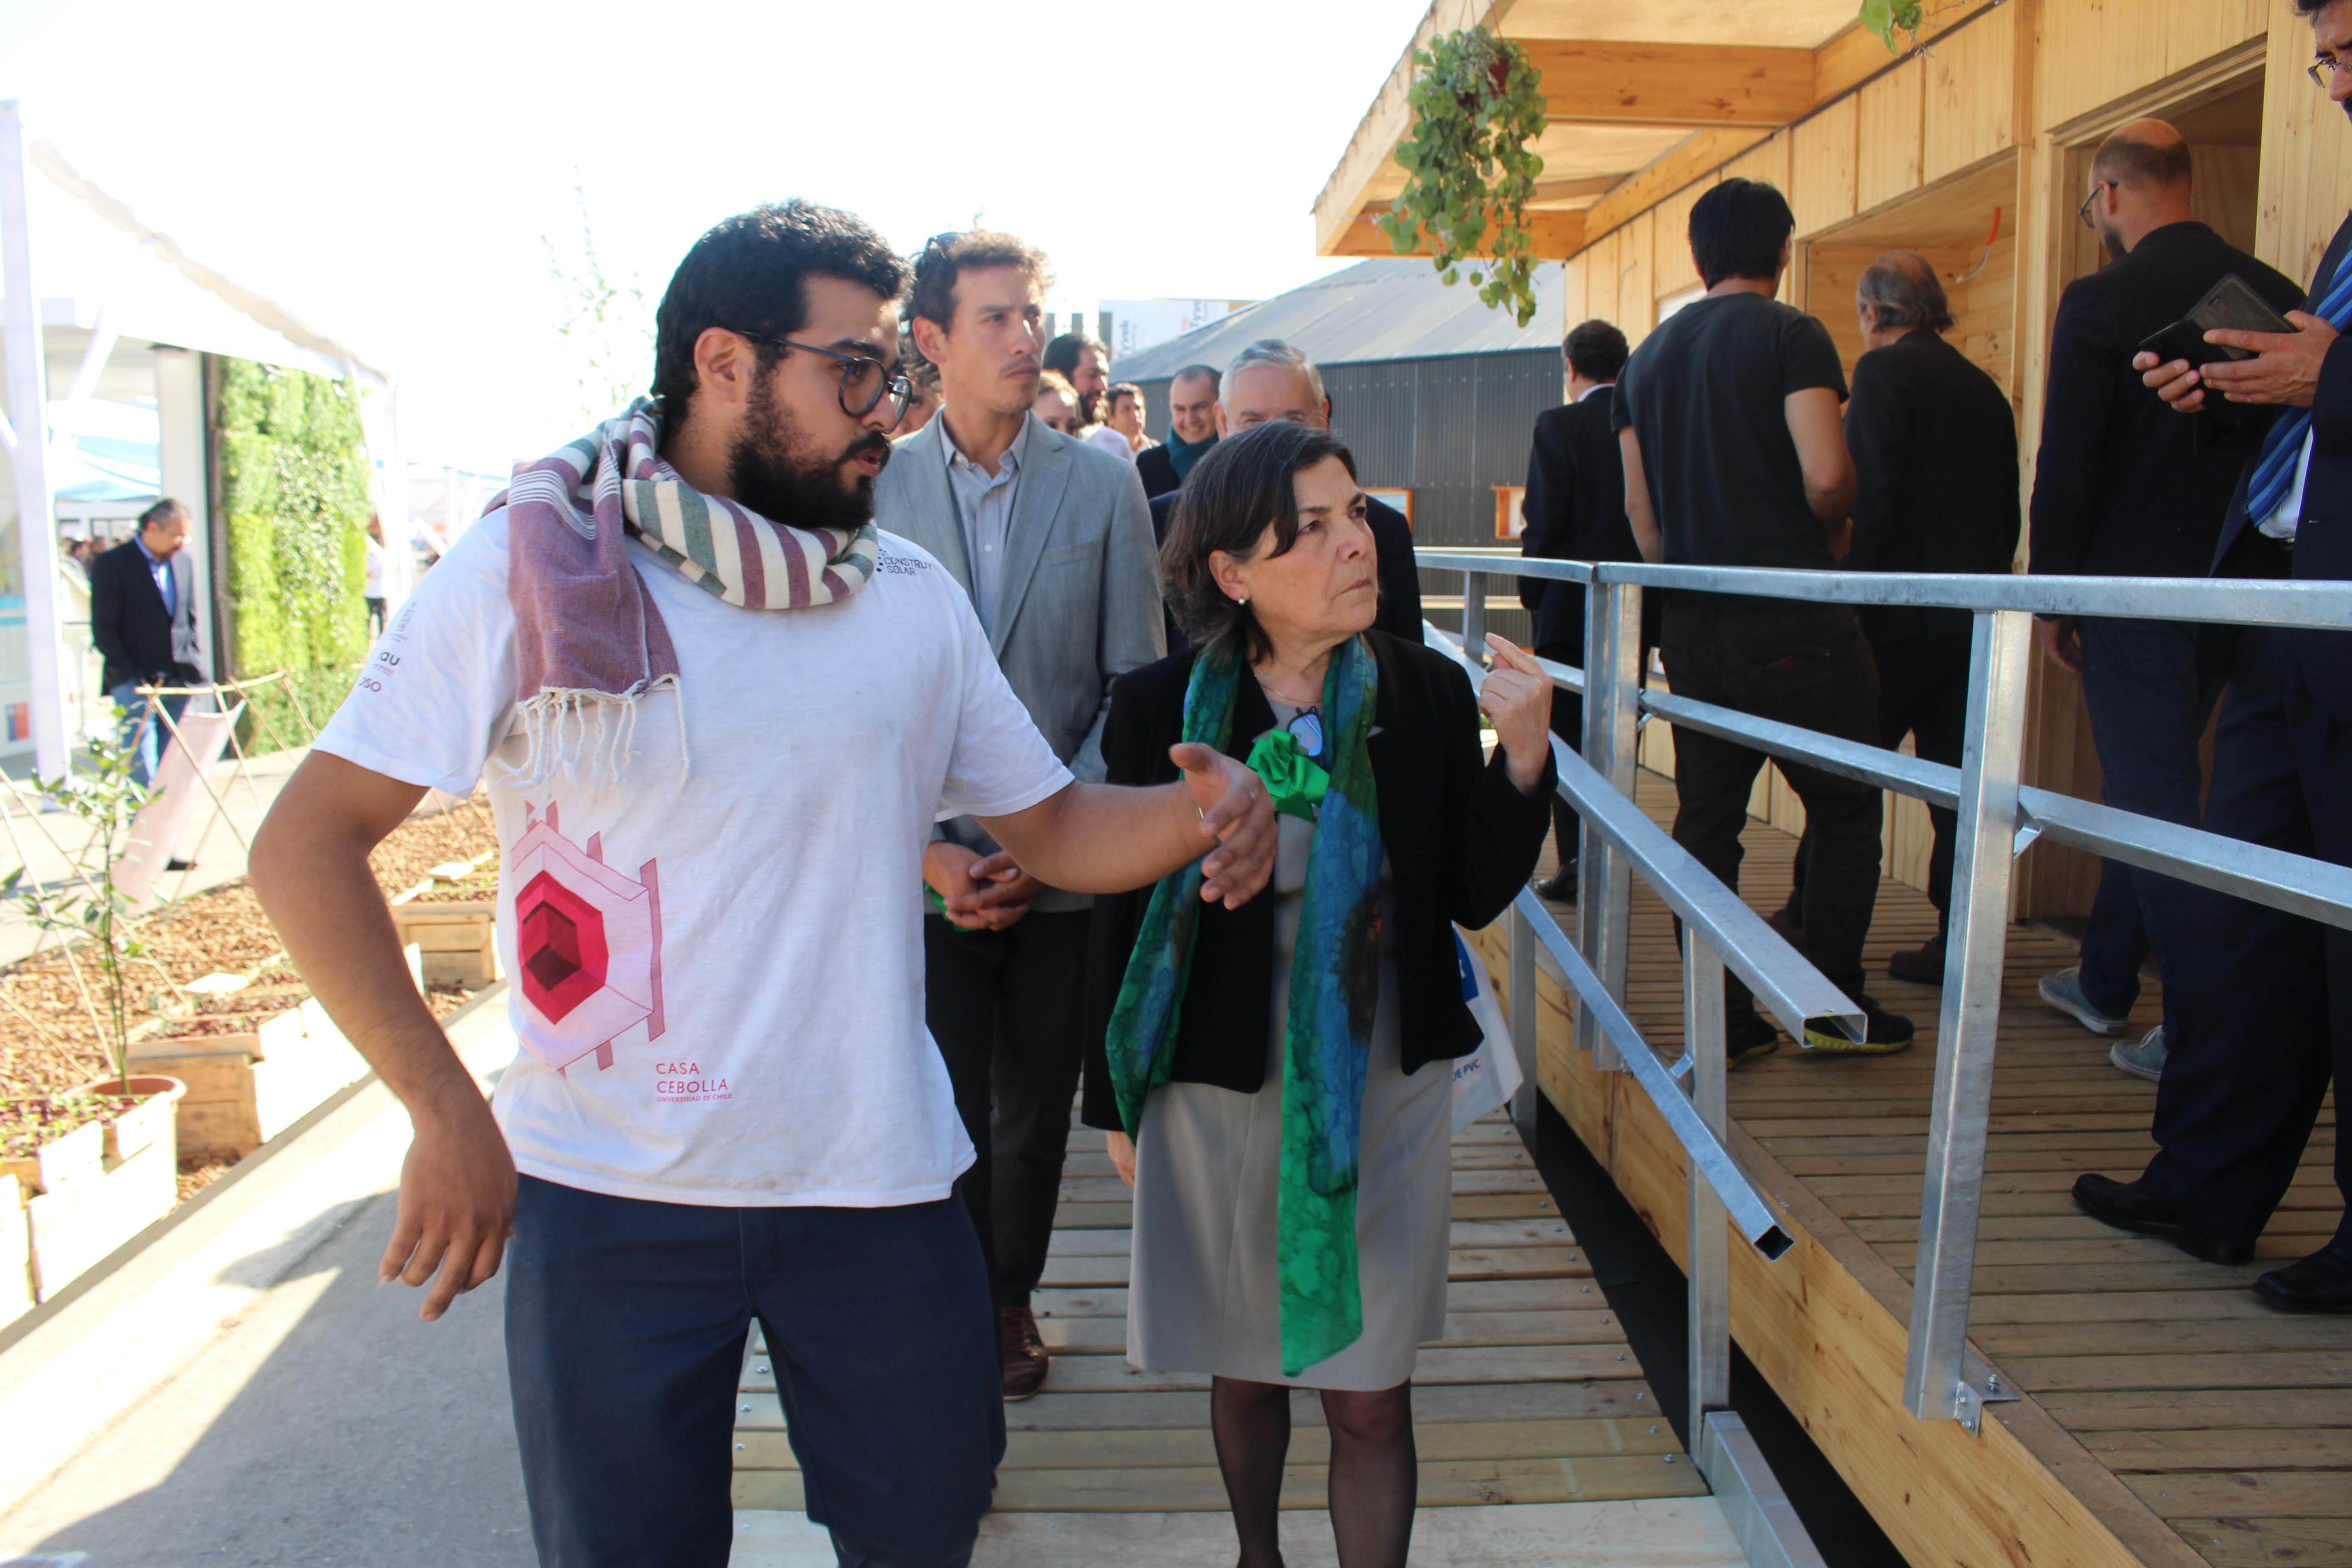 El estudiante Alastair Aguilera ofreció a la ministra Saball un recorrido al interior de la Casa Cebolla durante su exhibición en la Villa Solar.